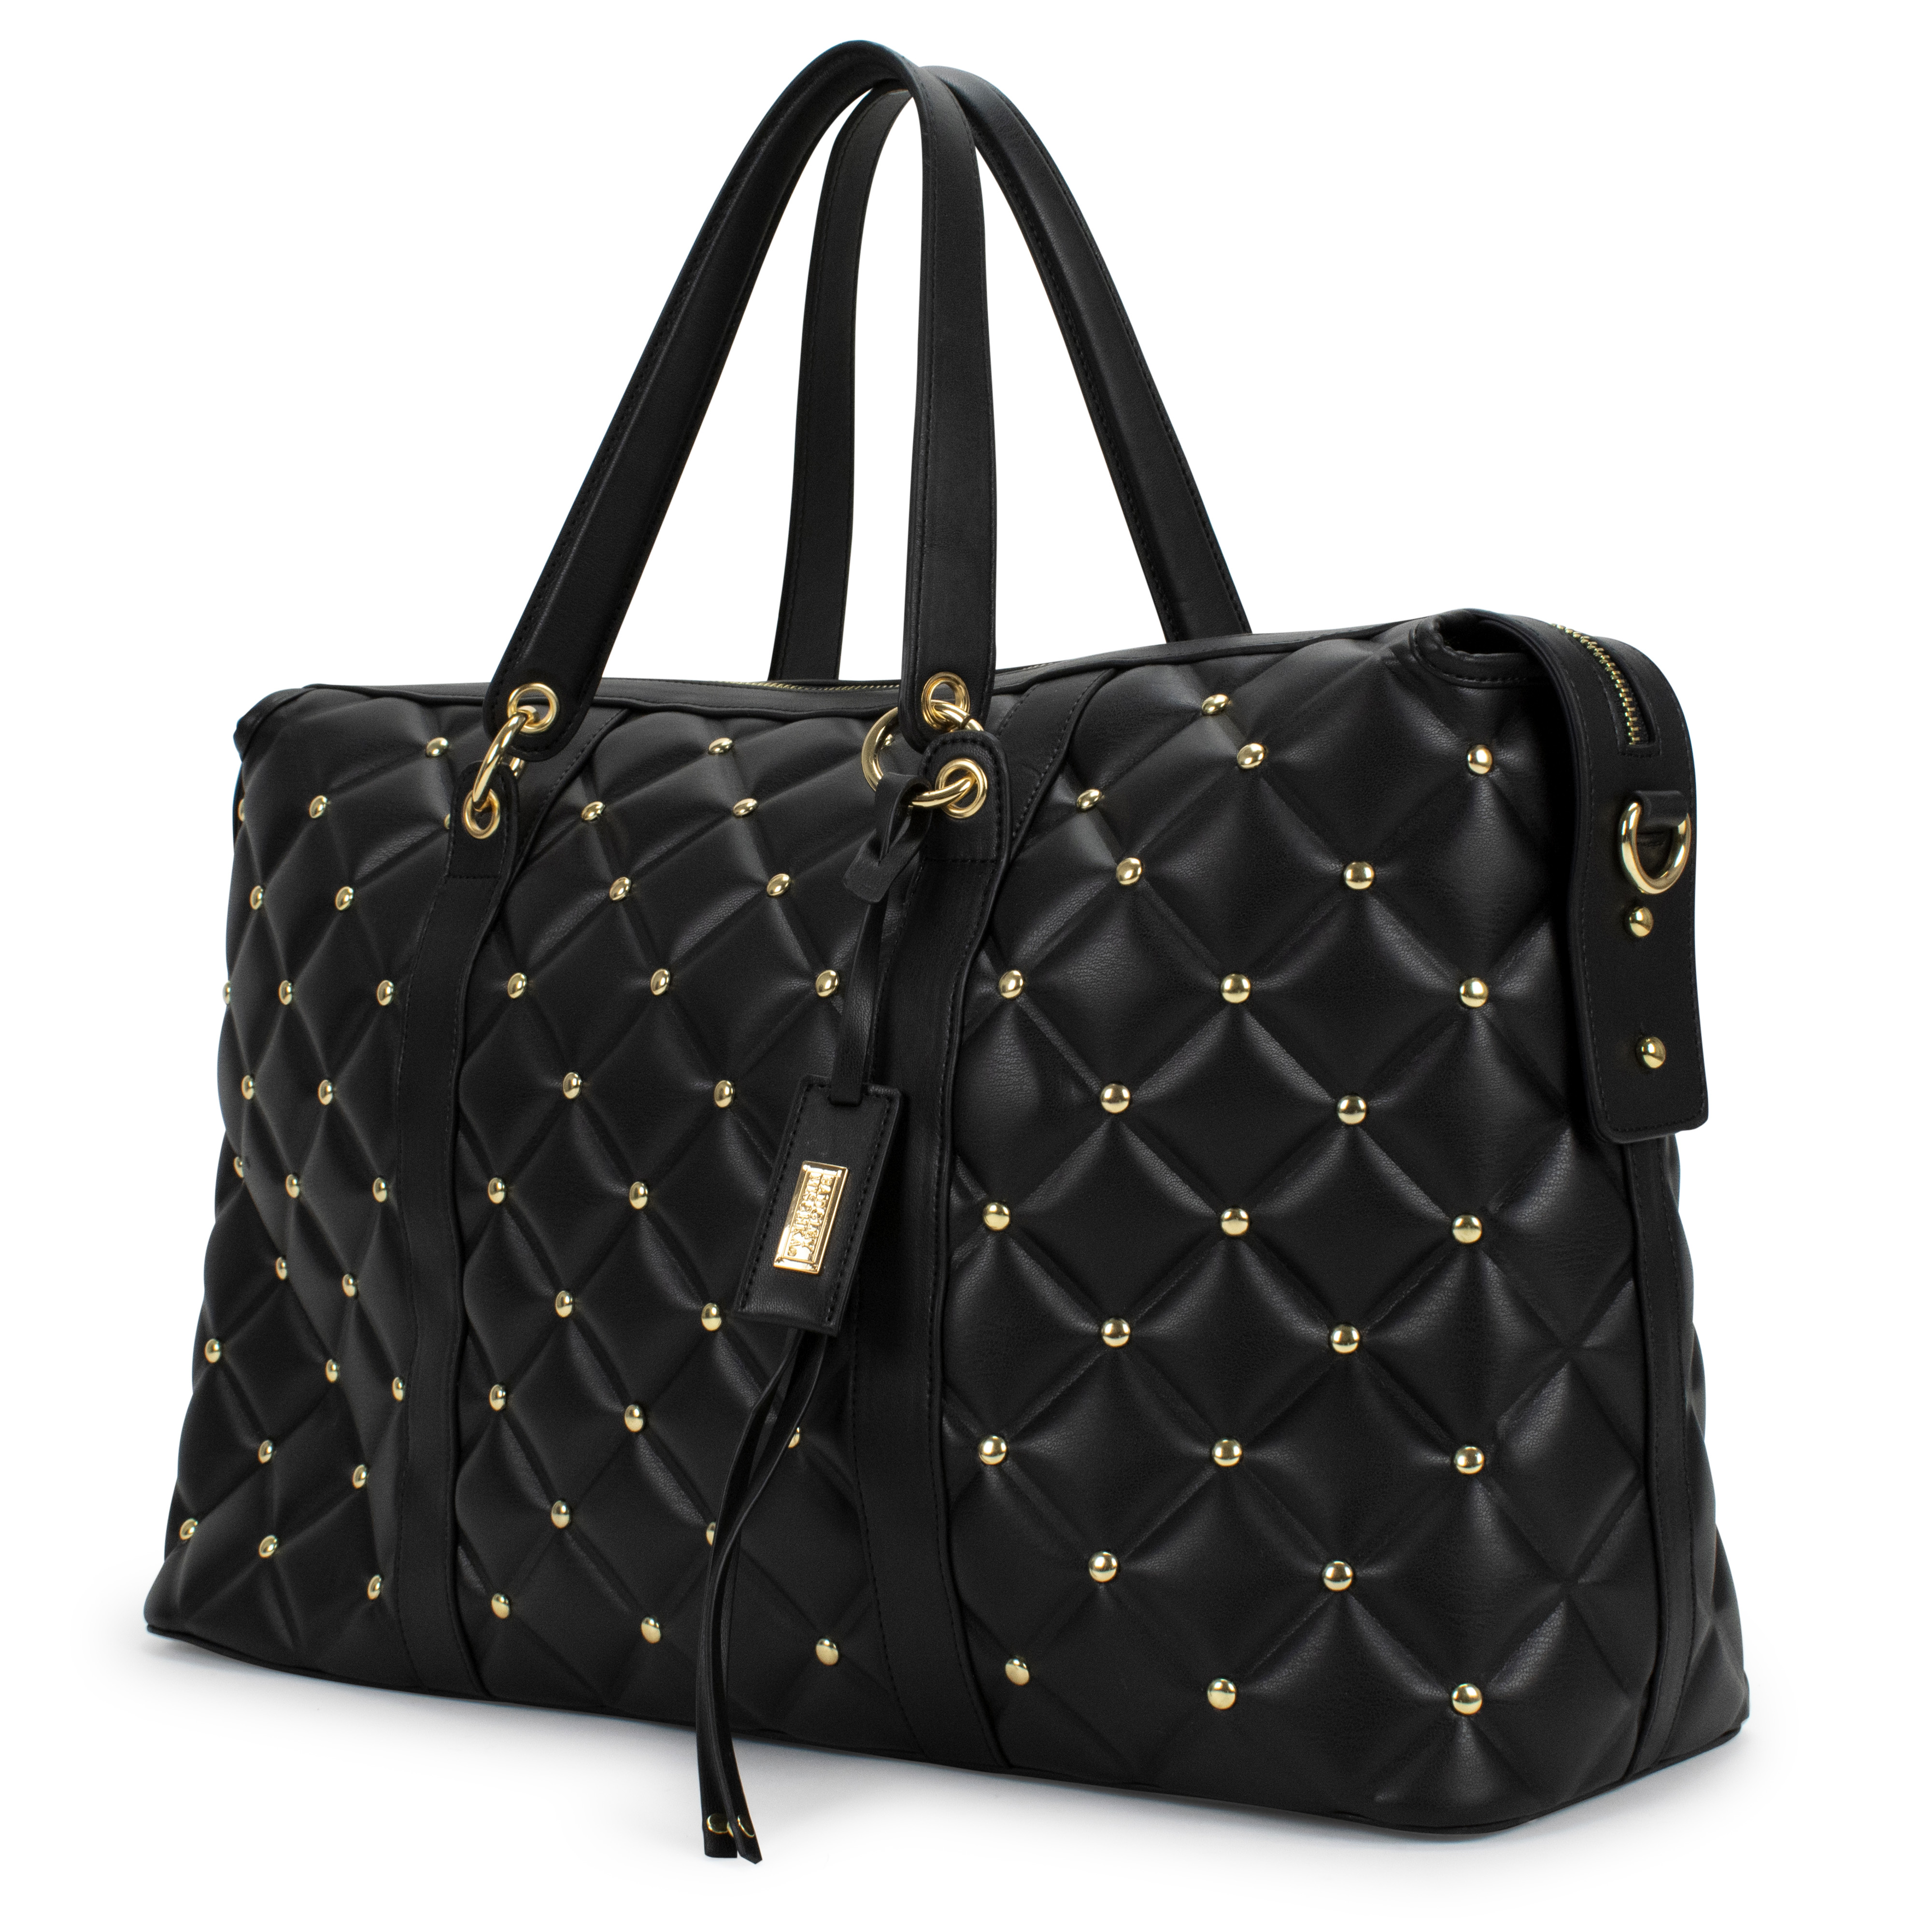 Women's Handbags, Clutches & Purses | Carvela